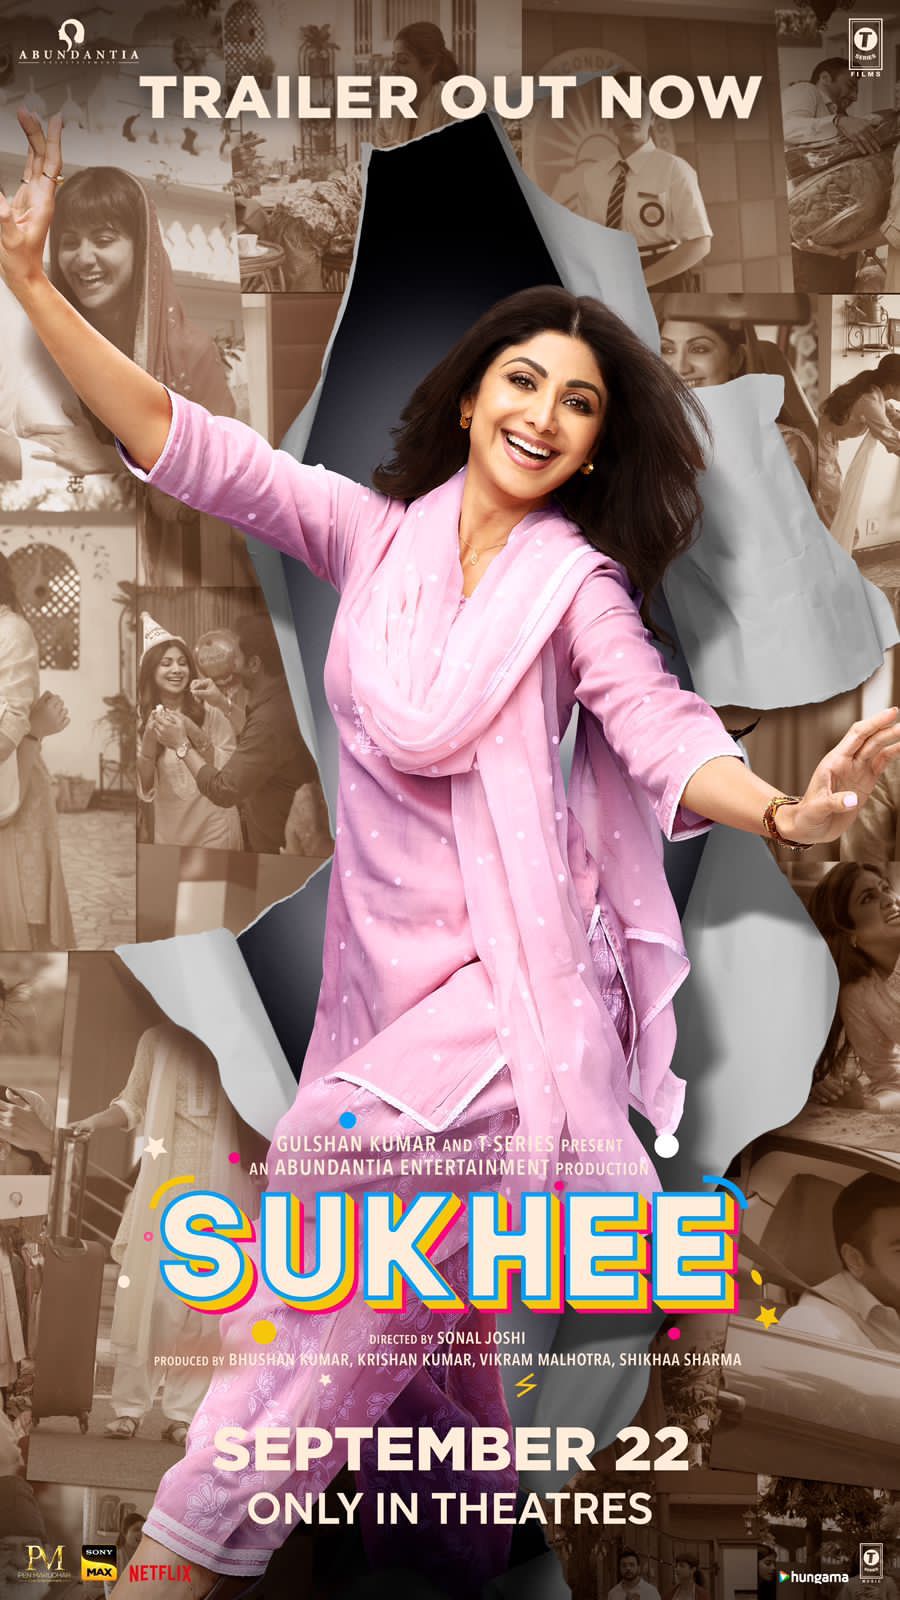 ดูหนังออนไลน์ฟรี ดูหนังออนไลน์ใหม่ Sukhee 2023 ย้อนวันเคยสุข movie678